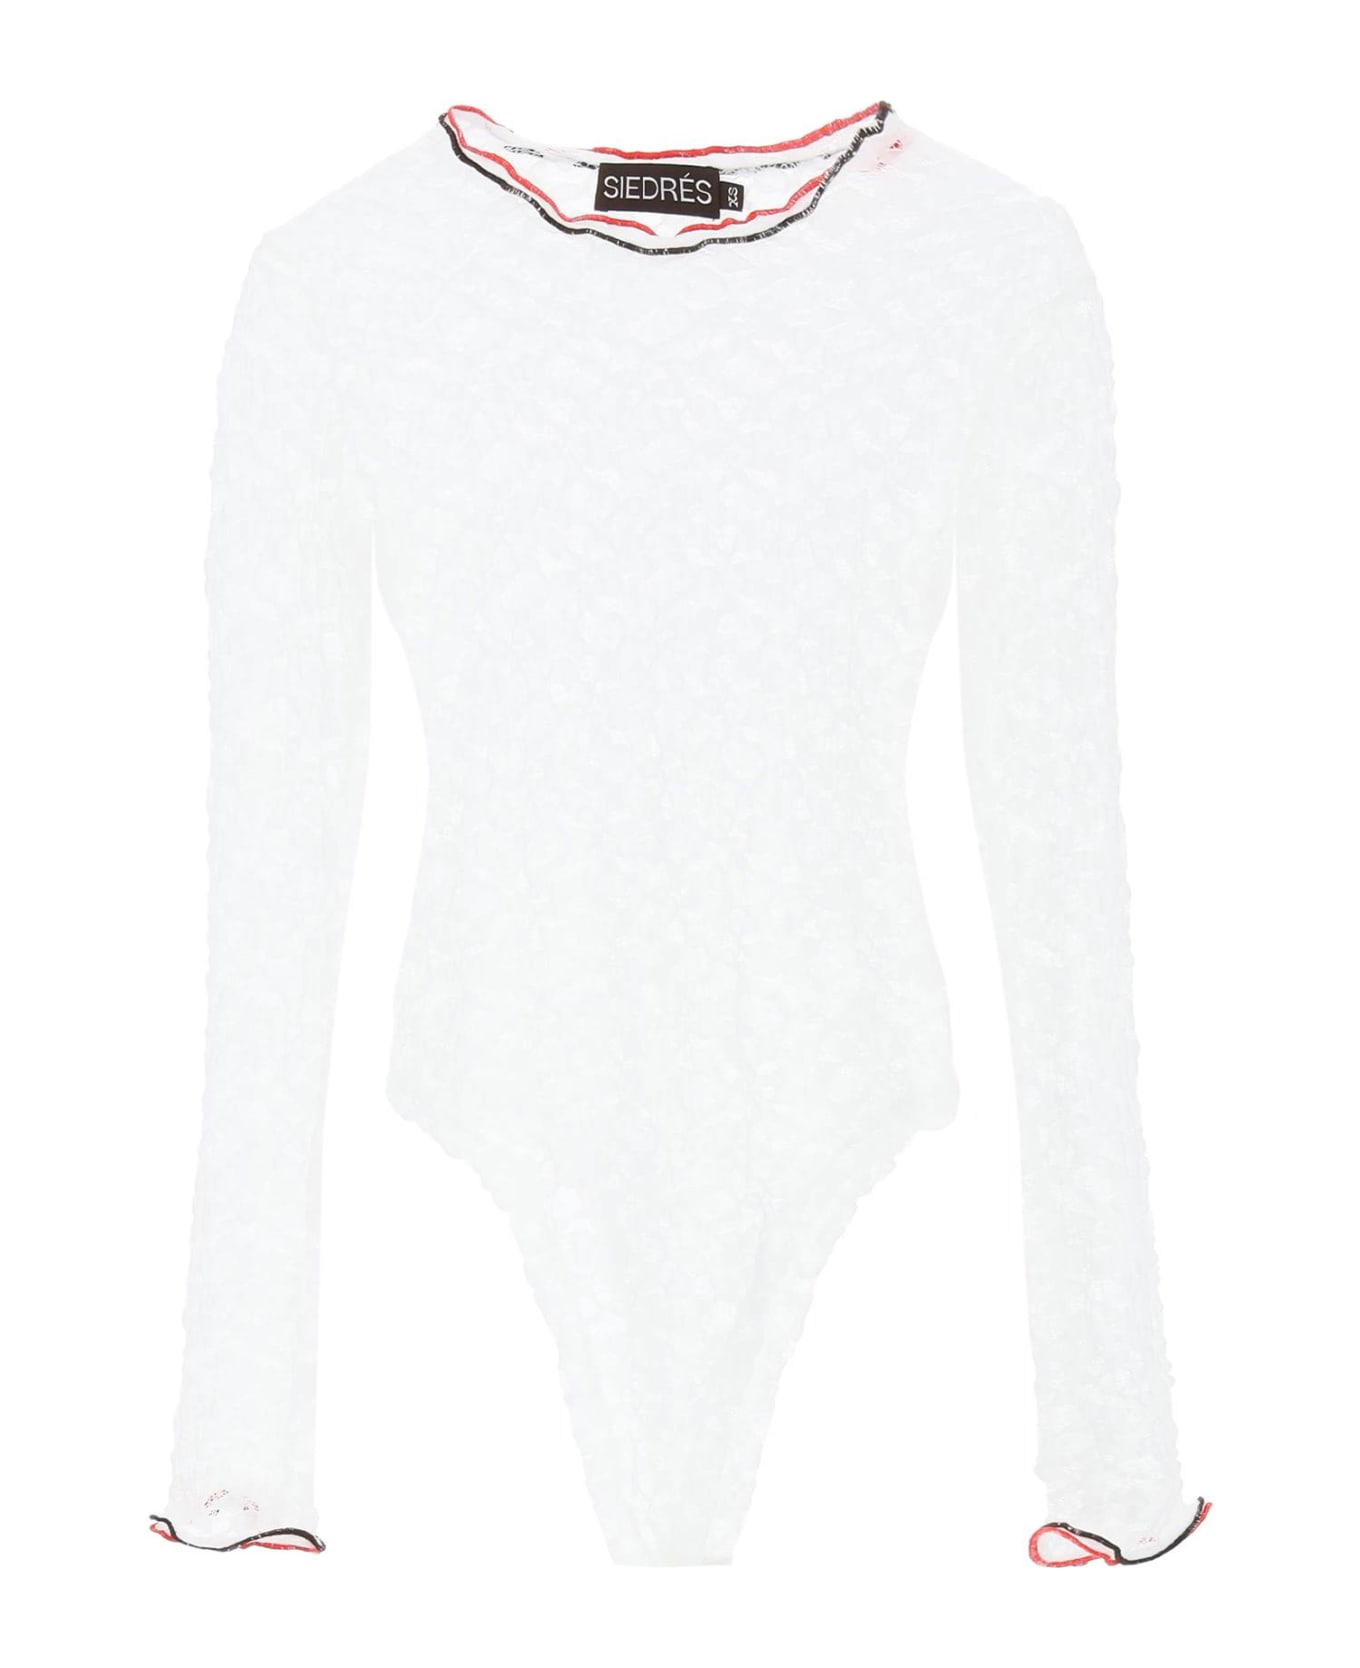 SIEDRES 'dixie' Stretch Lace Bodysuit - WHITE (White)